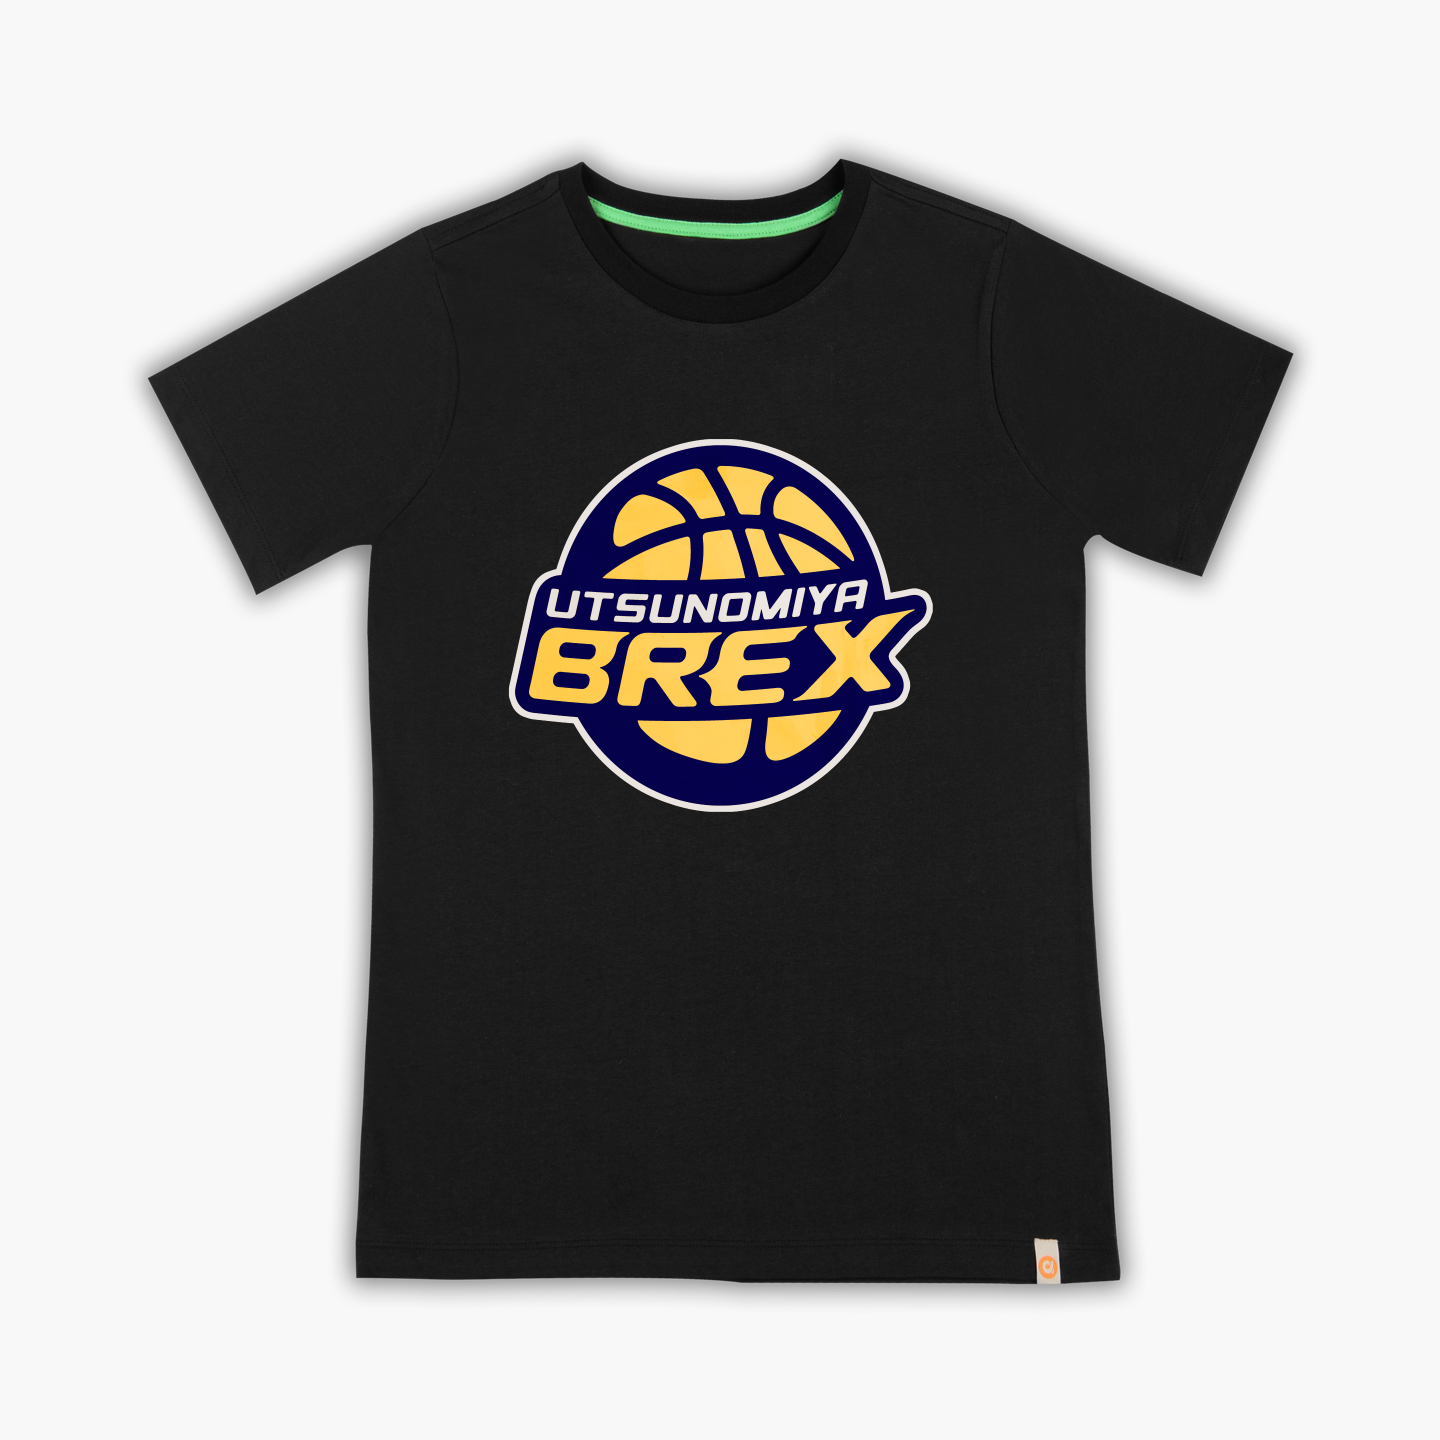 Brex - Tişört